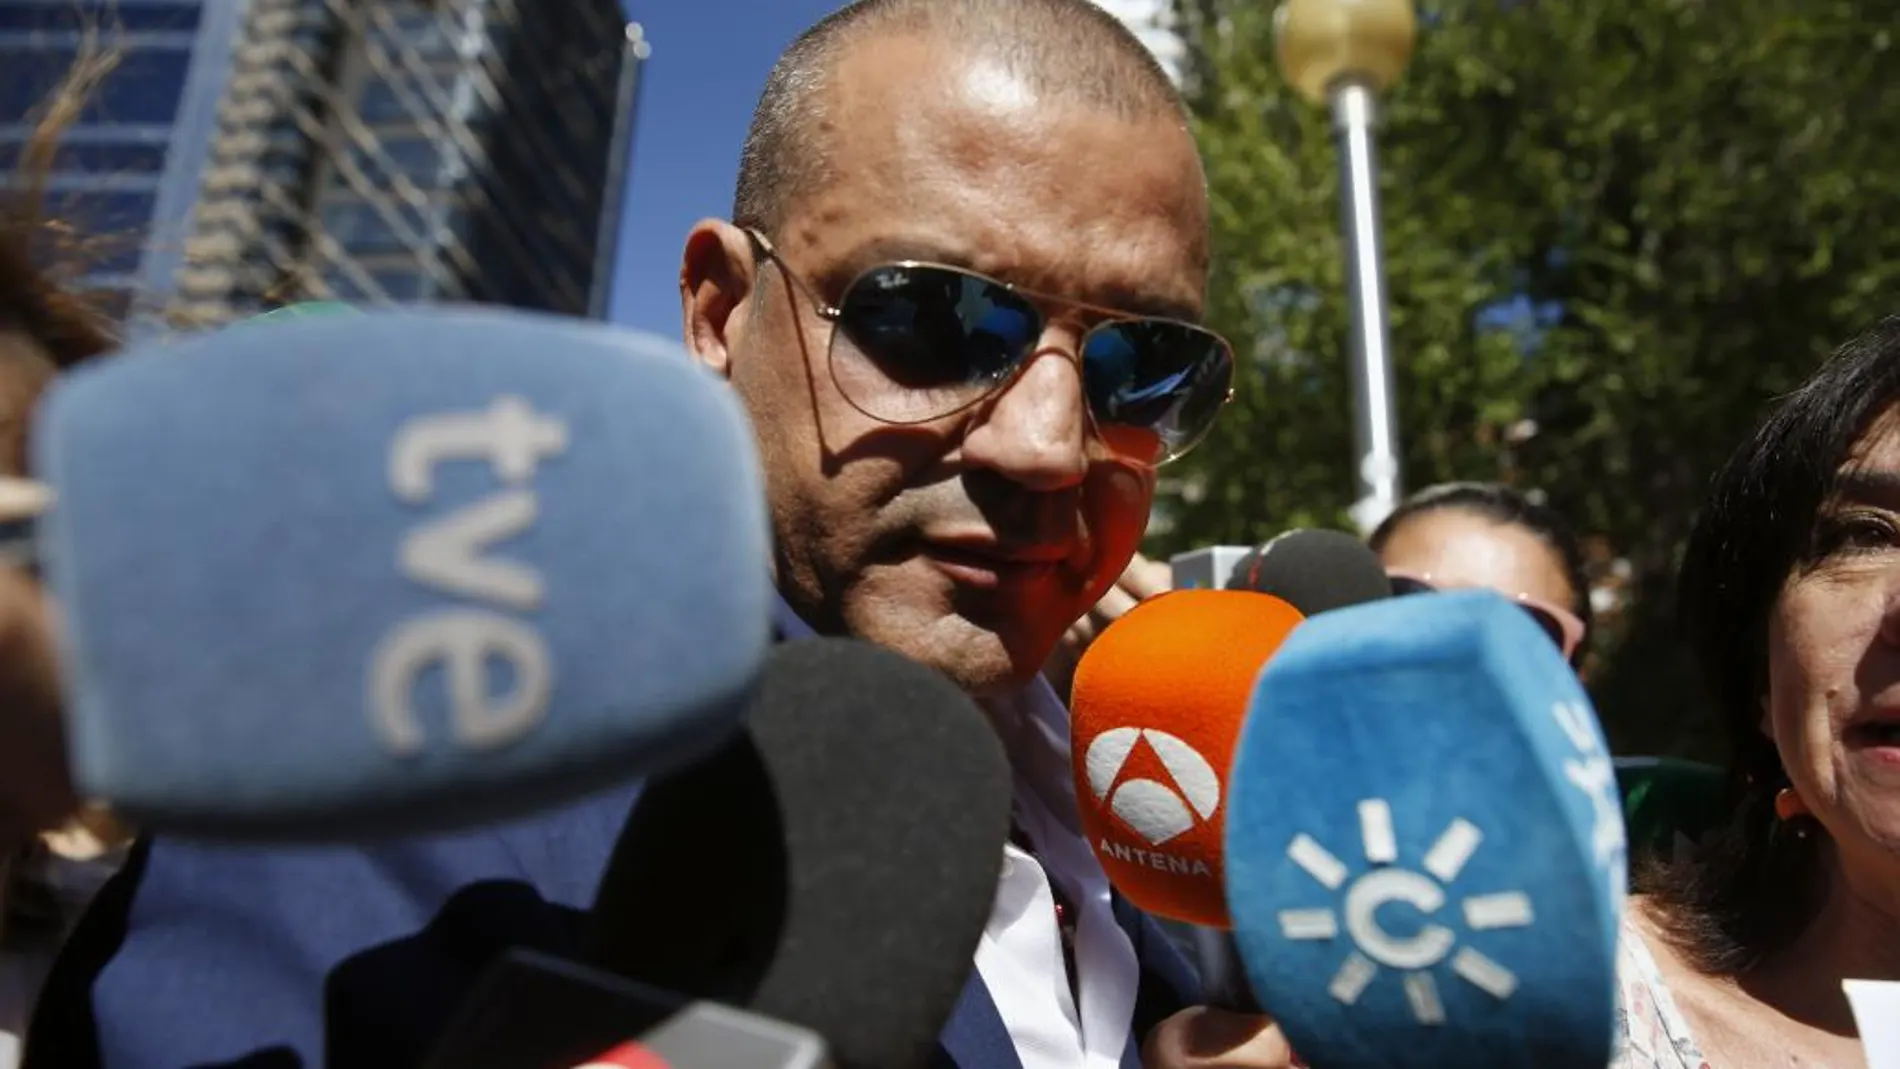 El empresario promotor y principal acusado por la tragedia del Madrid Arena, Miguel Ángel Flores.